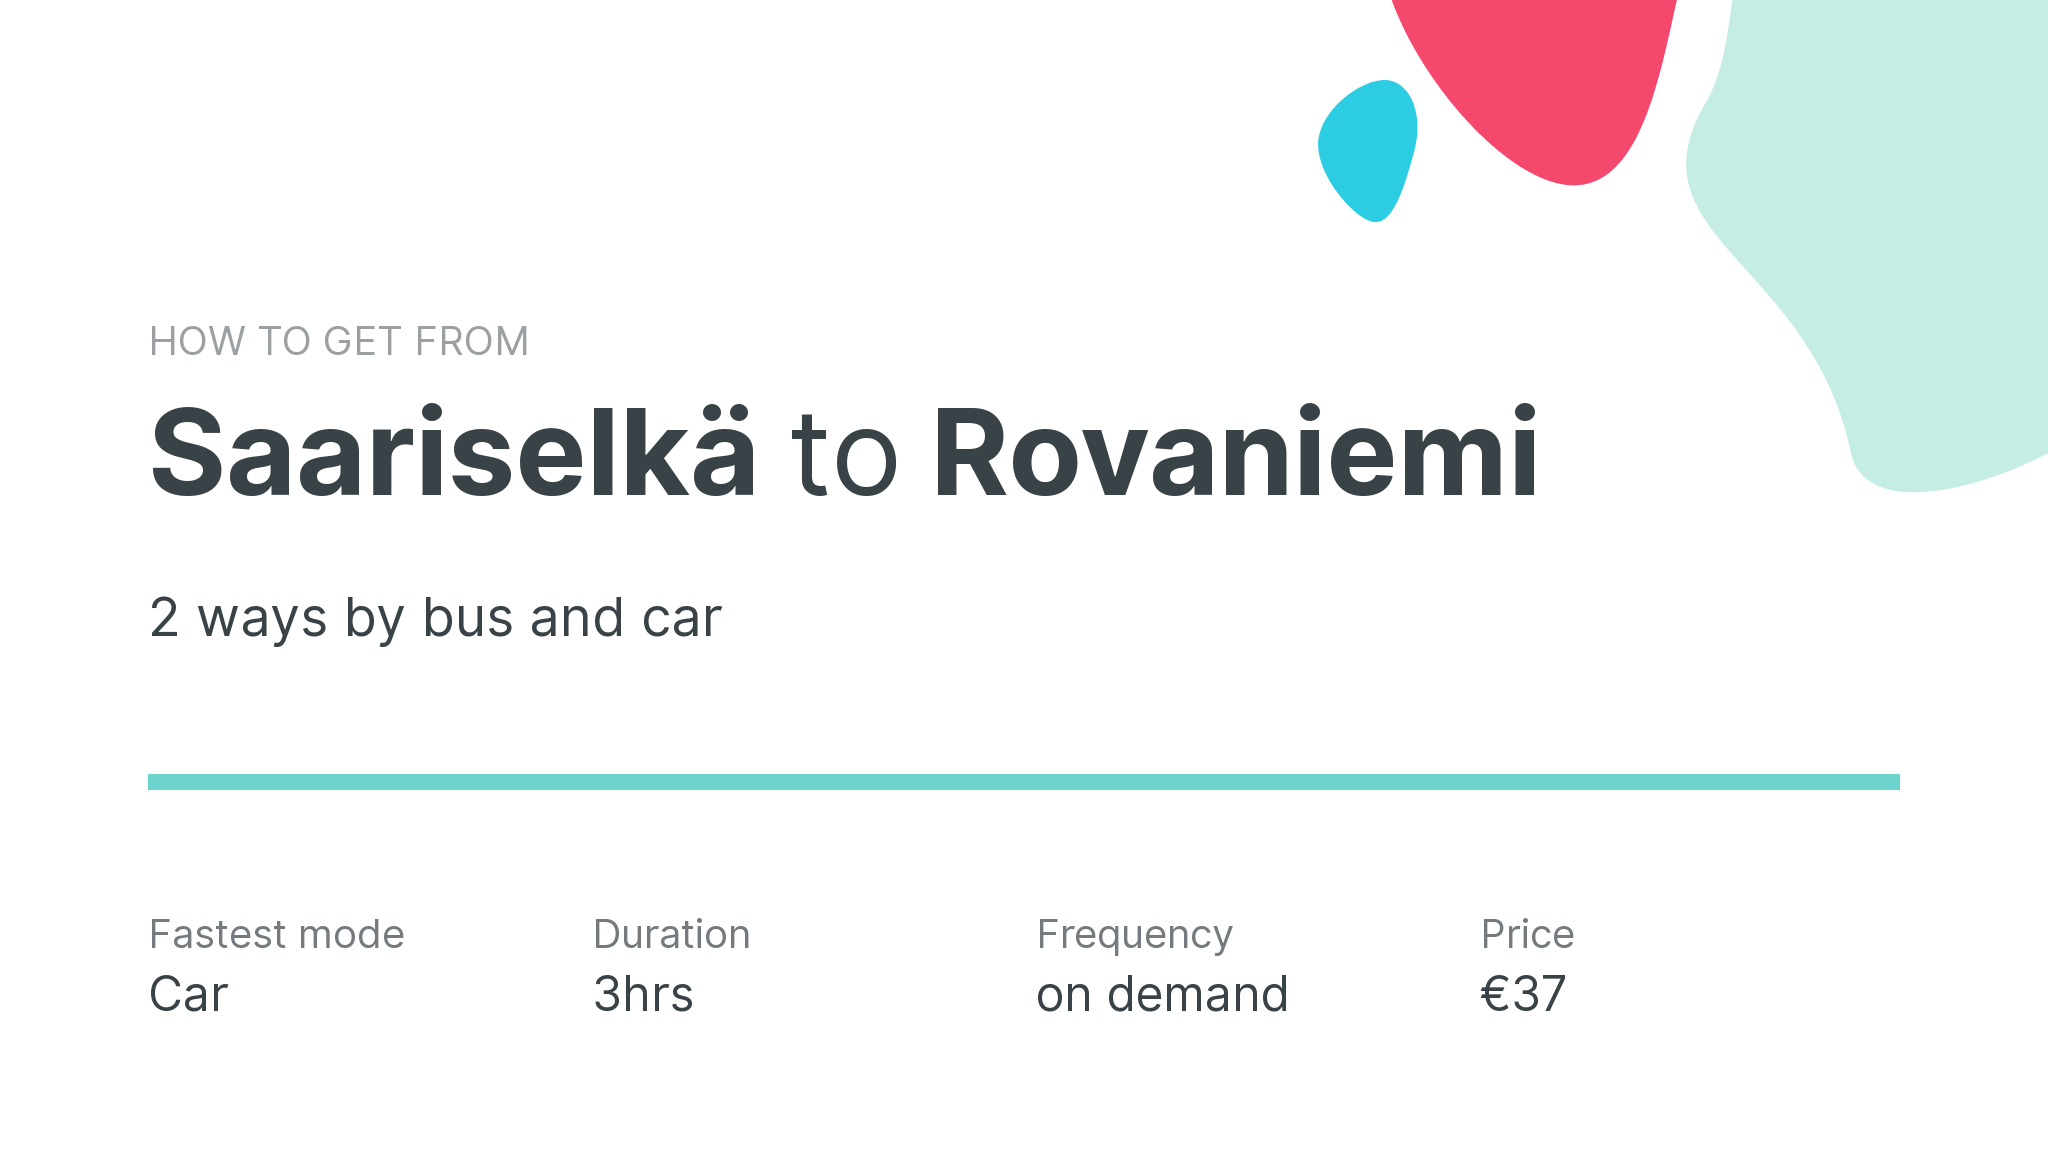 How do I get from Saariselkä to Rovaniemi